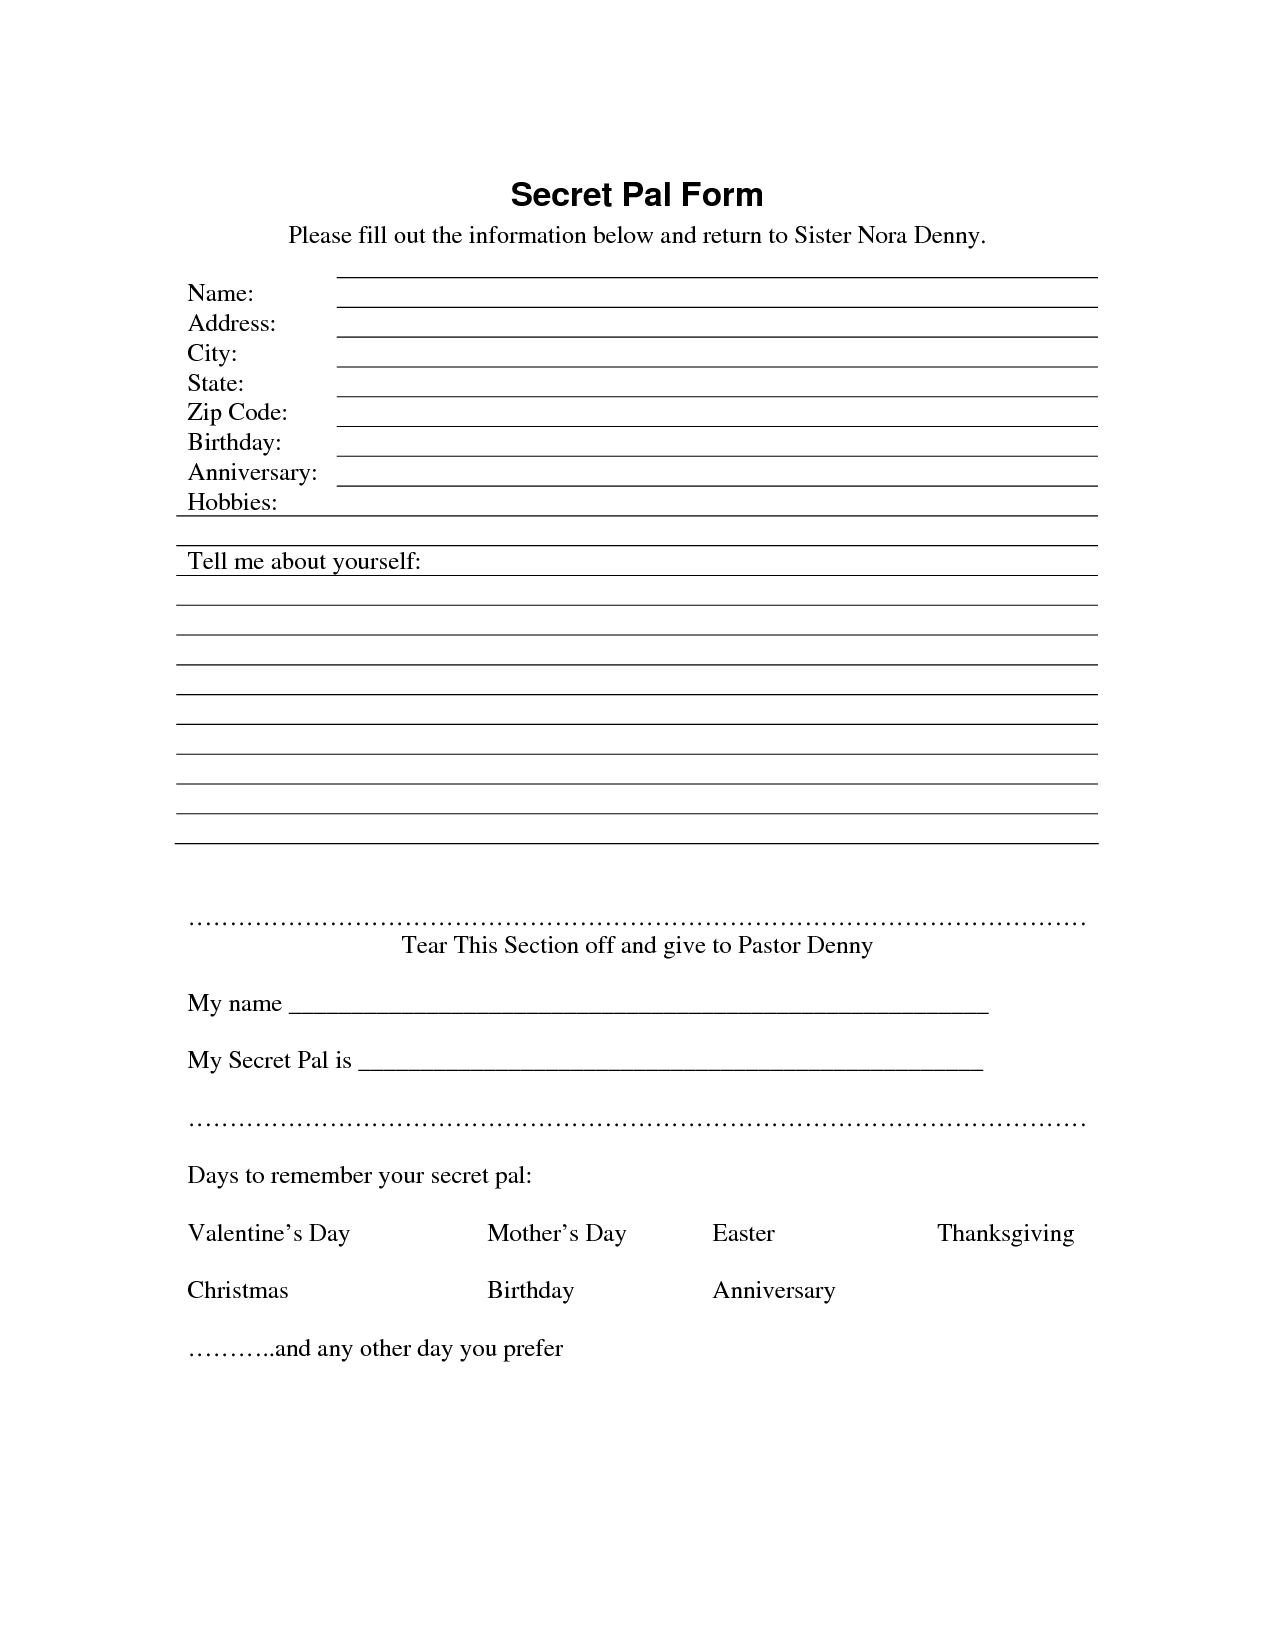 Secret Sister Questionnaire | Secret Pal Form - Download As Pdf - Free Printable Secret Pal Forms